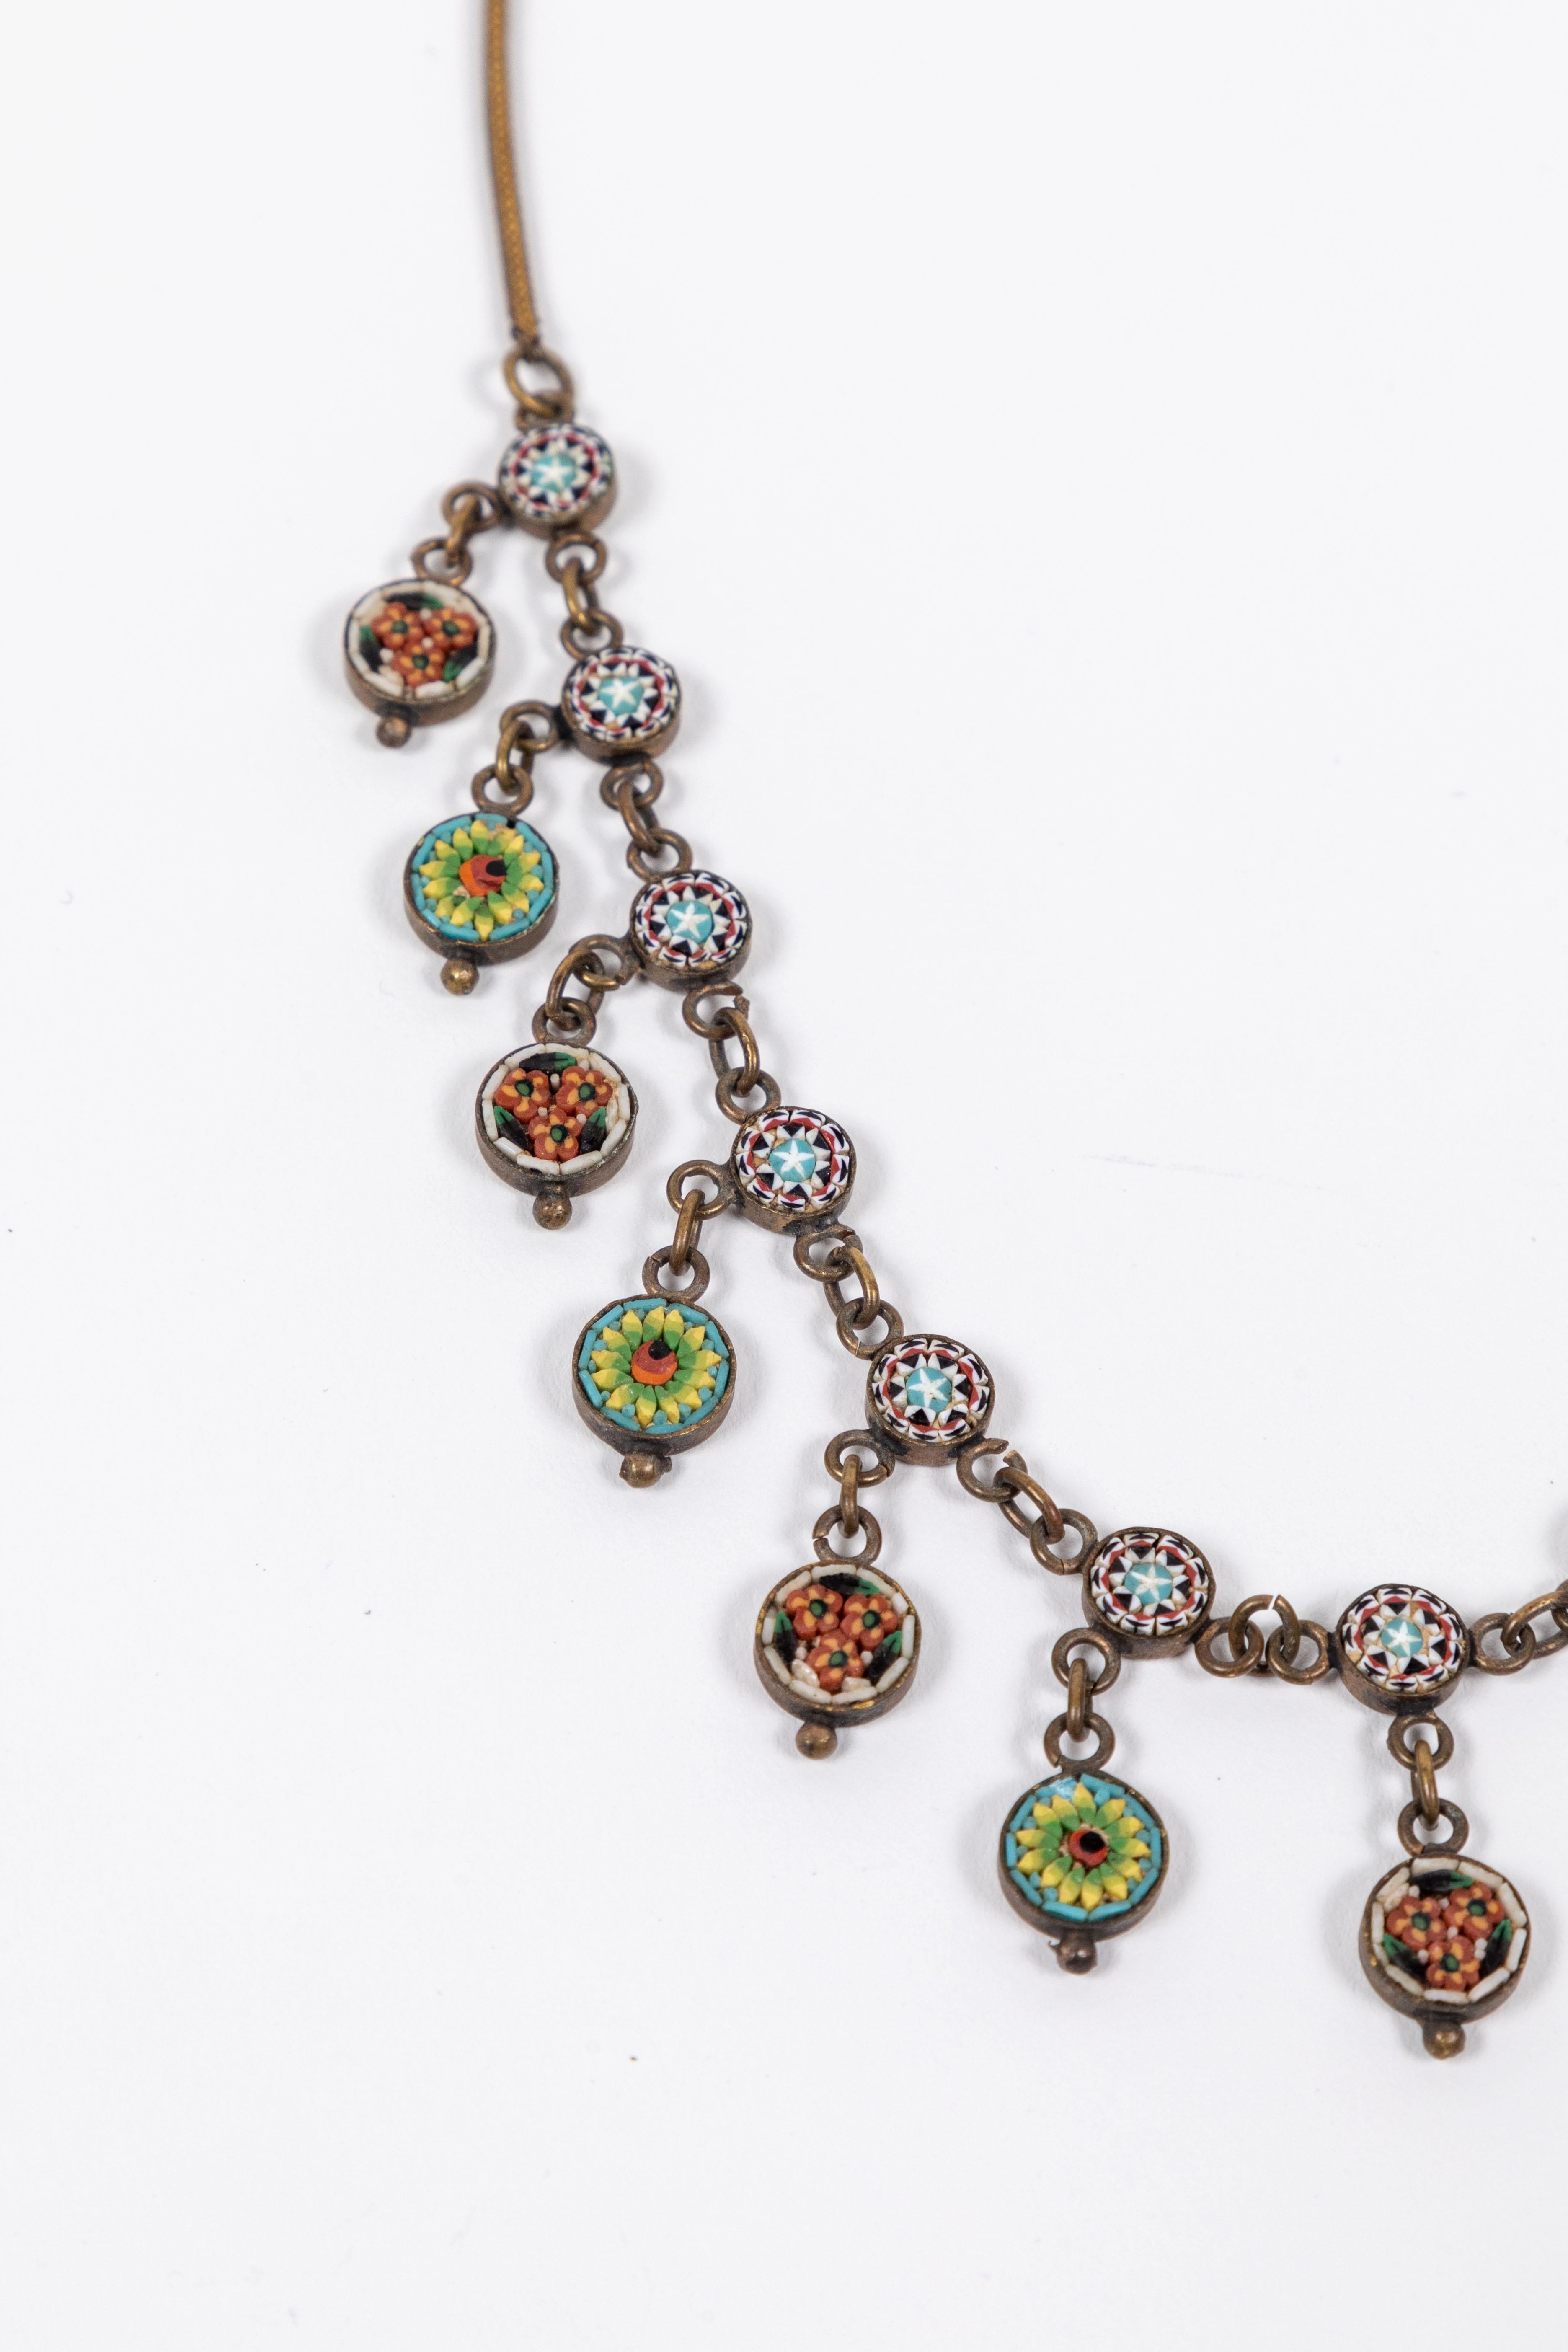 antique necklaces 1800s